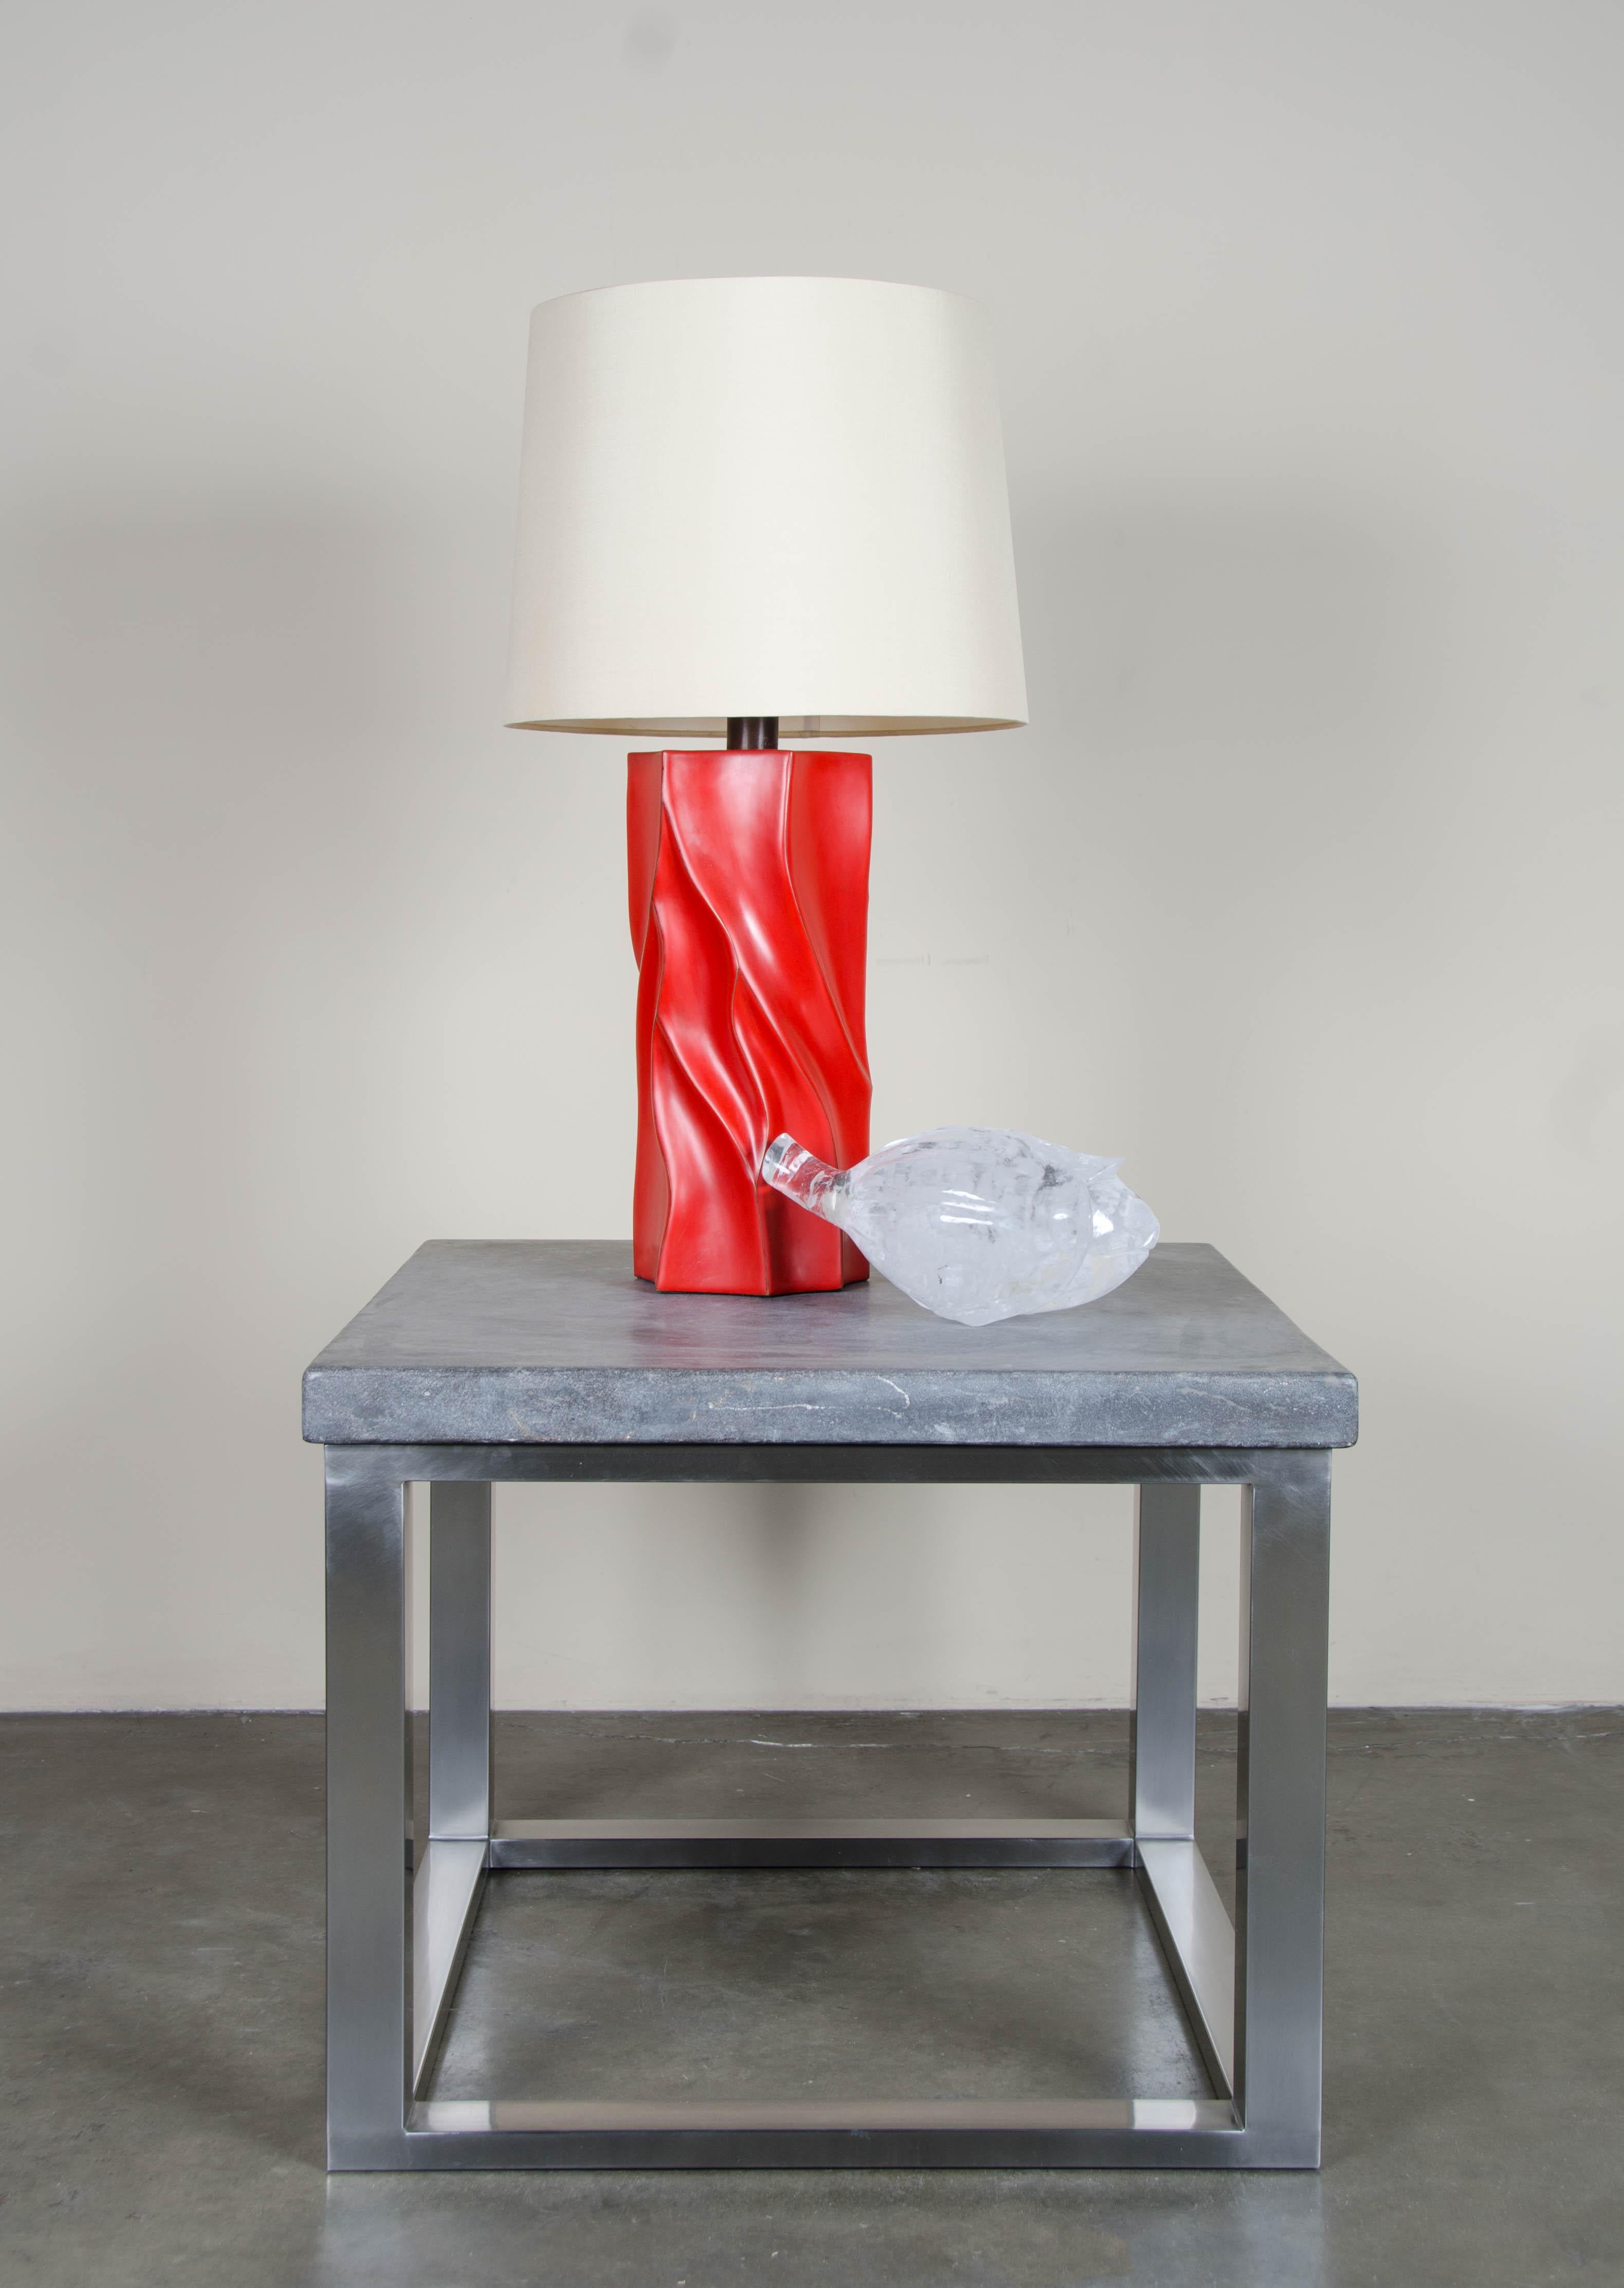 pushpin lamp with cork base